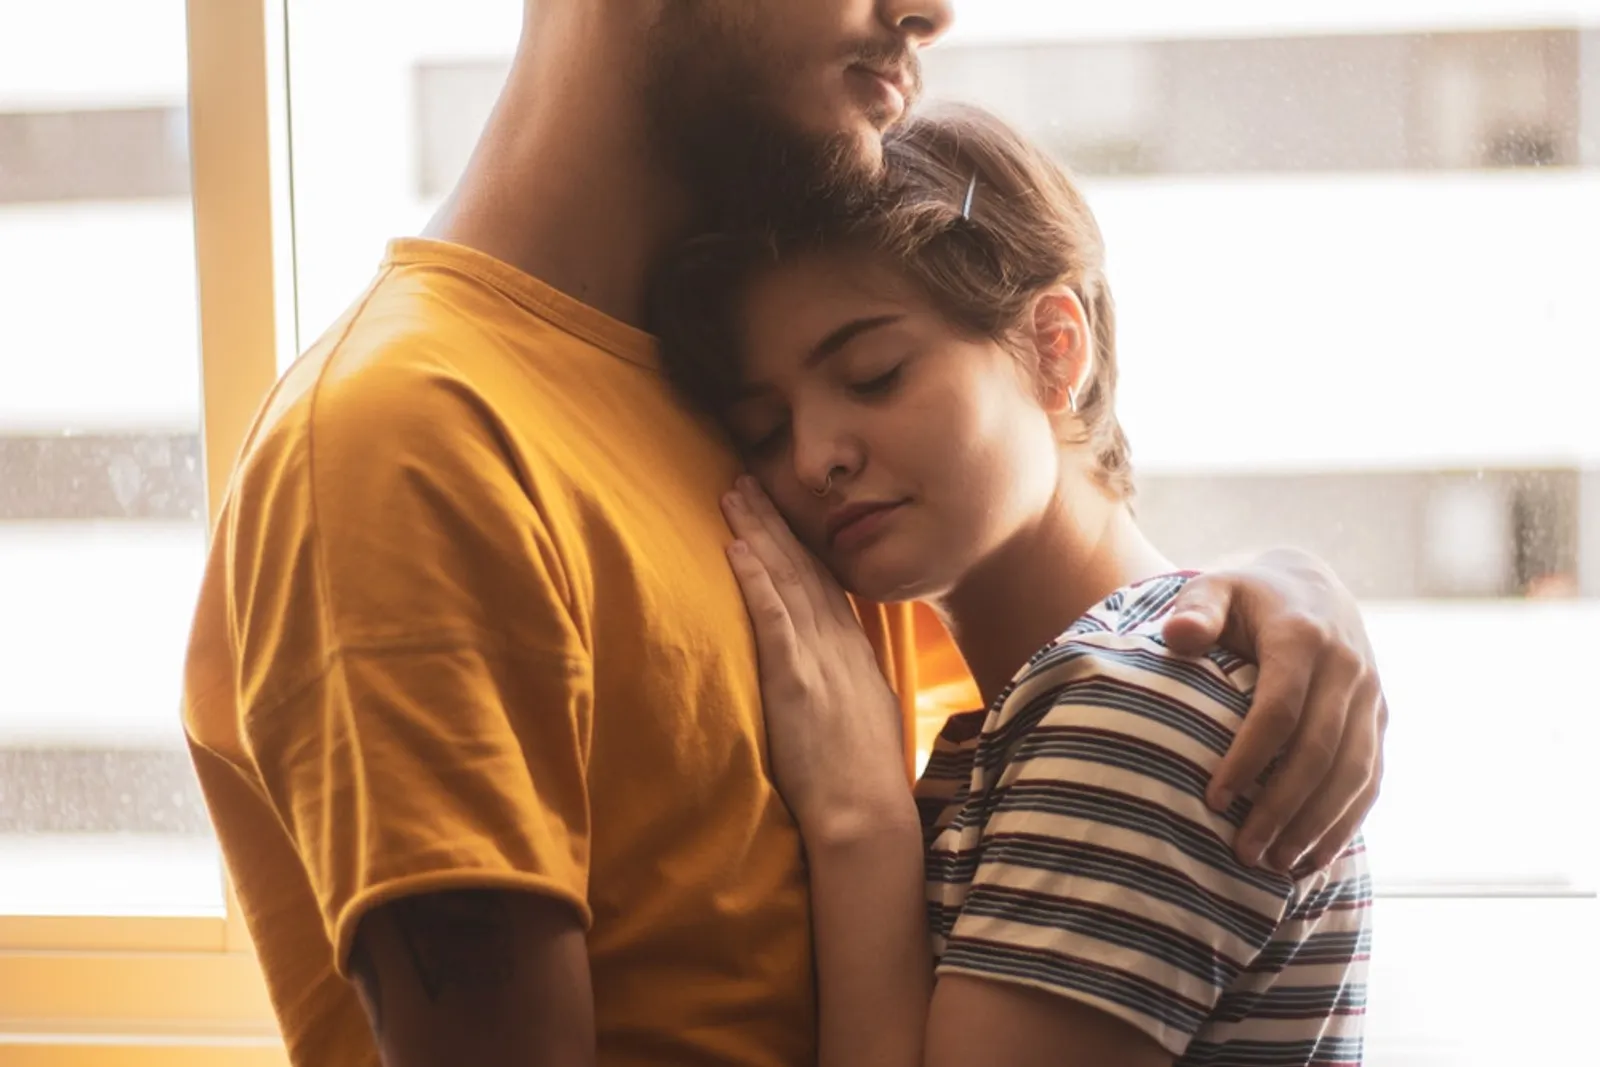 Amankah Berciuman Saat Pandemi? Ini 5 Fakta yang Perlu Kamu Ketahui